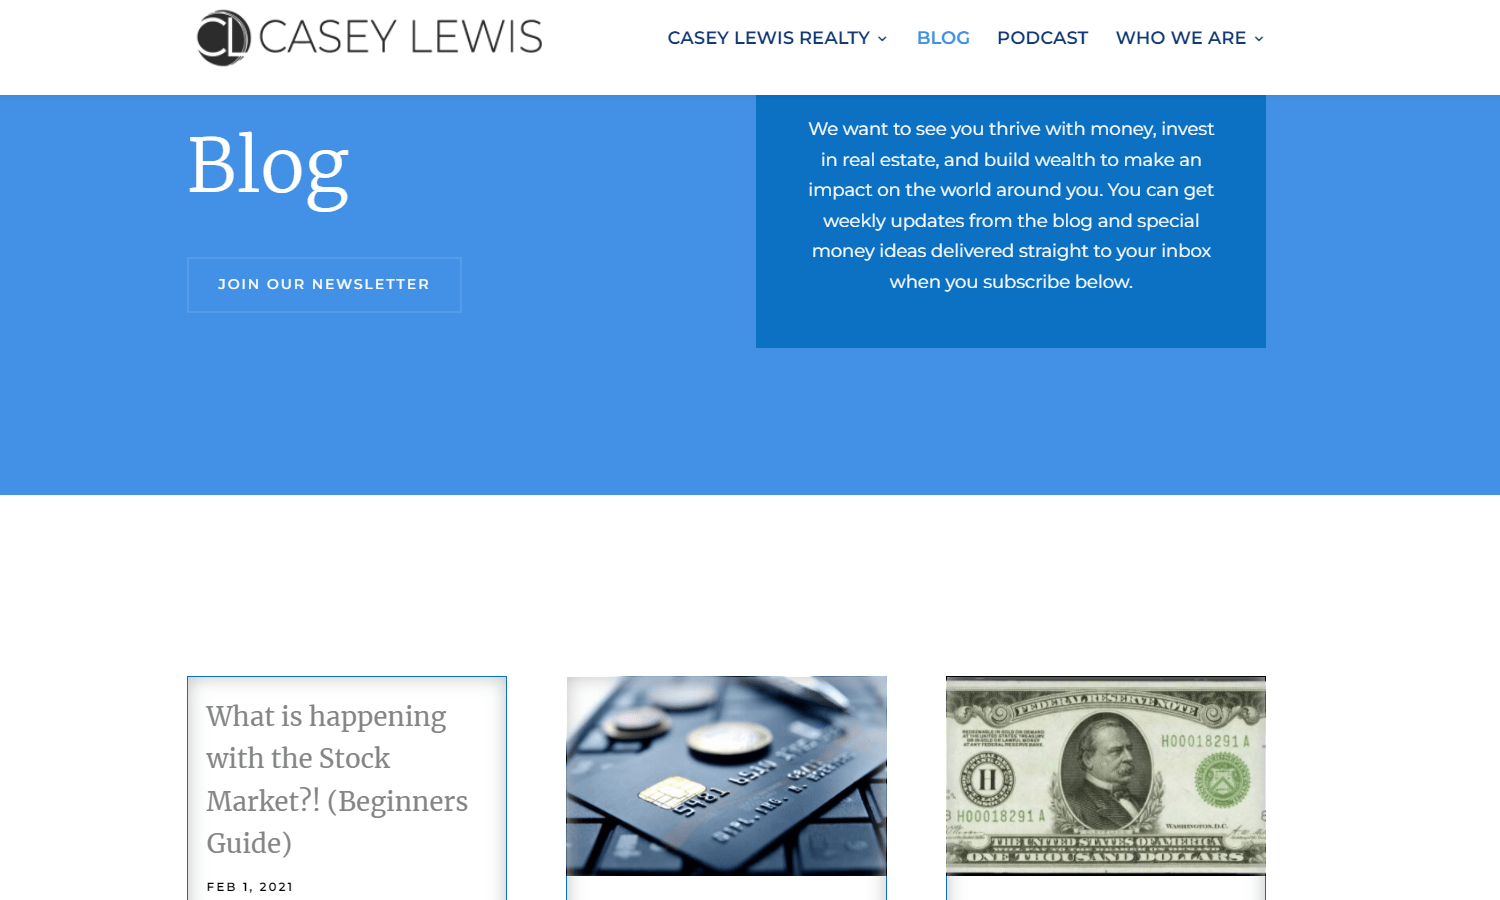 Casey Lewis Realty Website Design - Blog